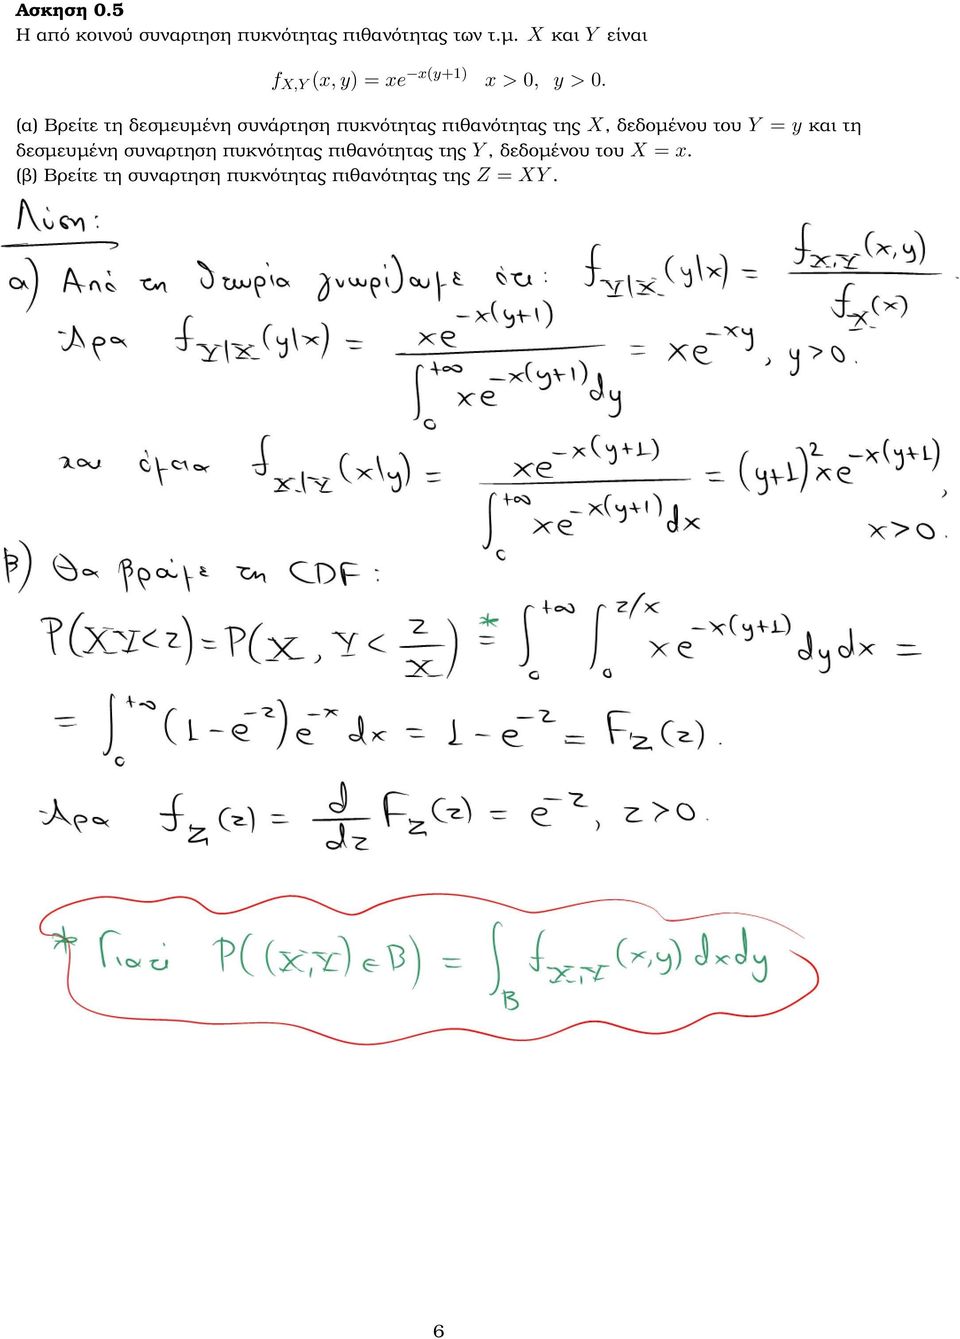 (α) Βρείτε τη δεσµευµένη συνάρτηση πυκνότητας πιθανότητας της X, δεδοµένου του Y = y